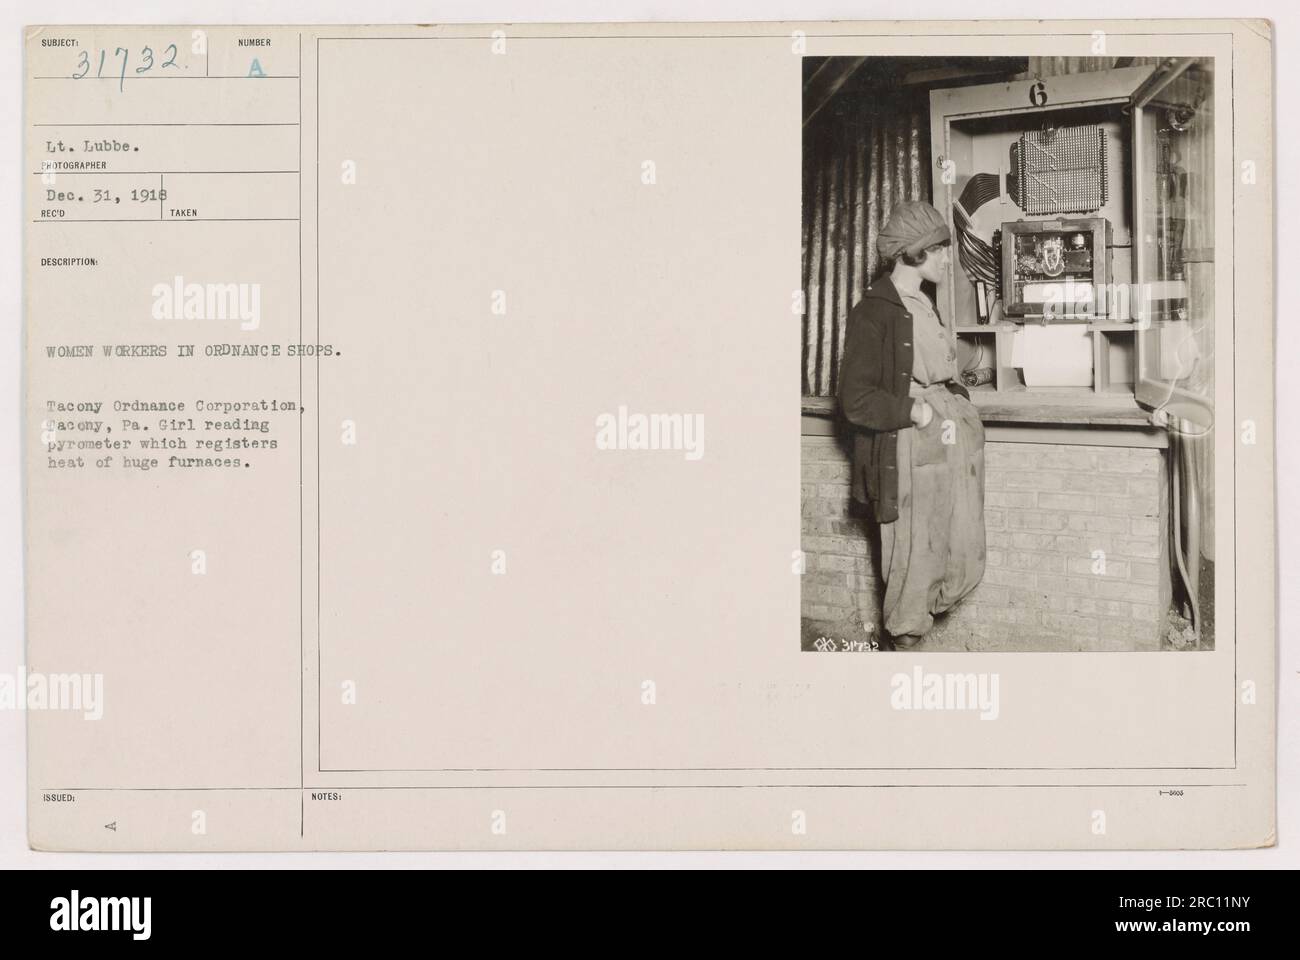 Una lavoratrice della Tacony Ordnance Corporation a Dacony, Pennsylvania, è vista leggere un pirometro, un dispositivo utilizzato per misurare il calore dei forni. L'immagine mostra il coinvolgimento attivo delle donne nei negozi di ordigni durante la prima guerra mondiale. Catturato il 31 dicembre 1918. Foto Stock